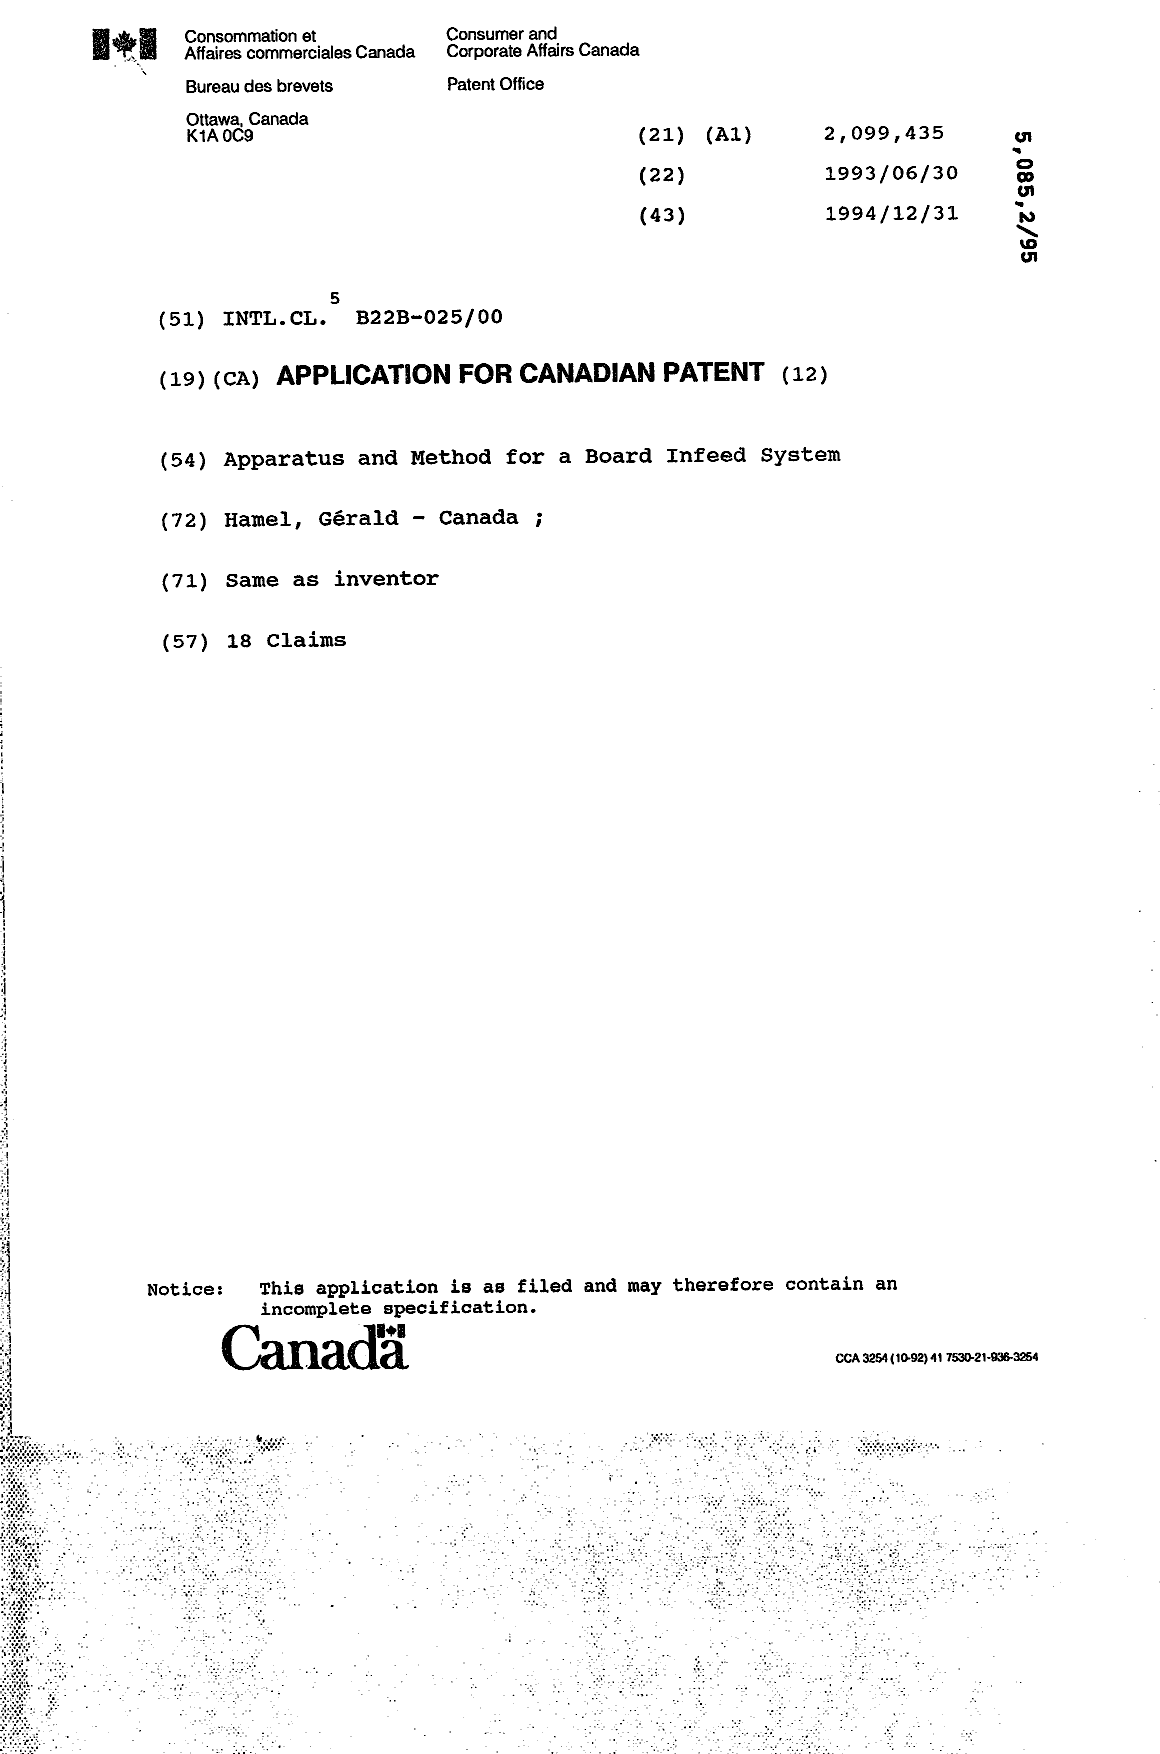 Document de brevet canadien 2099435. Page couverture 19950414. Image 1 de 1